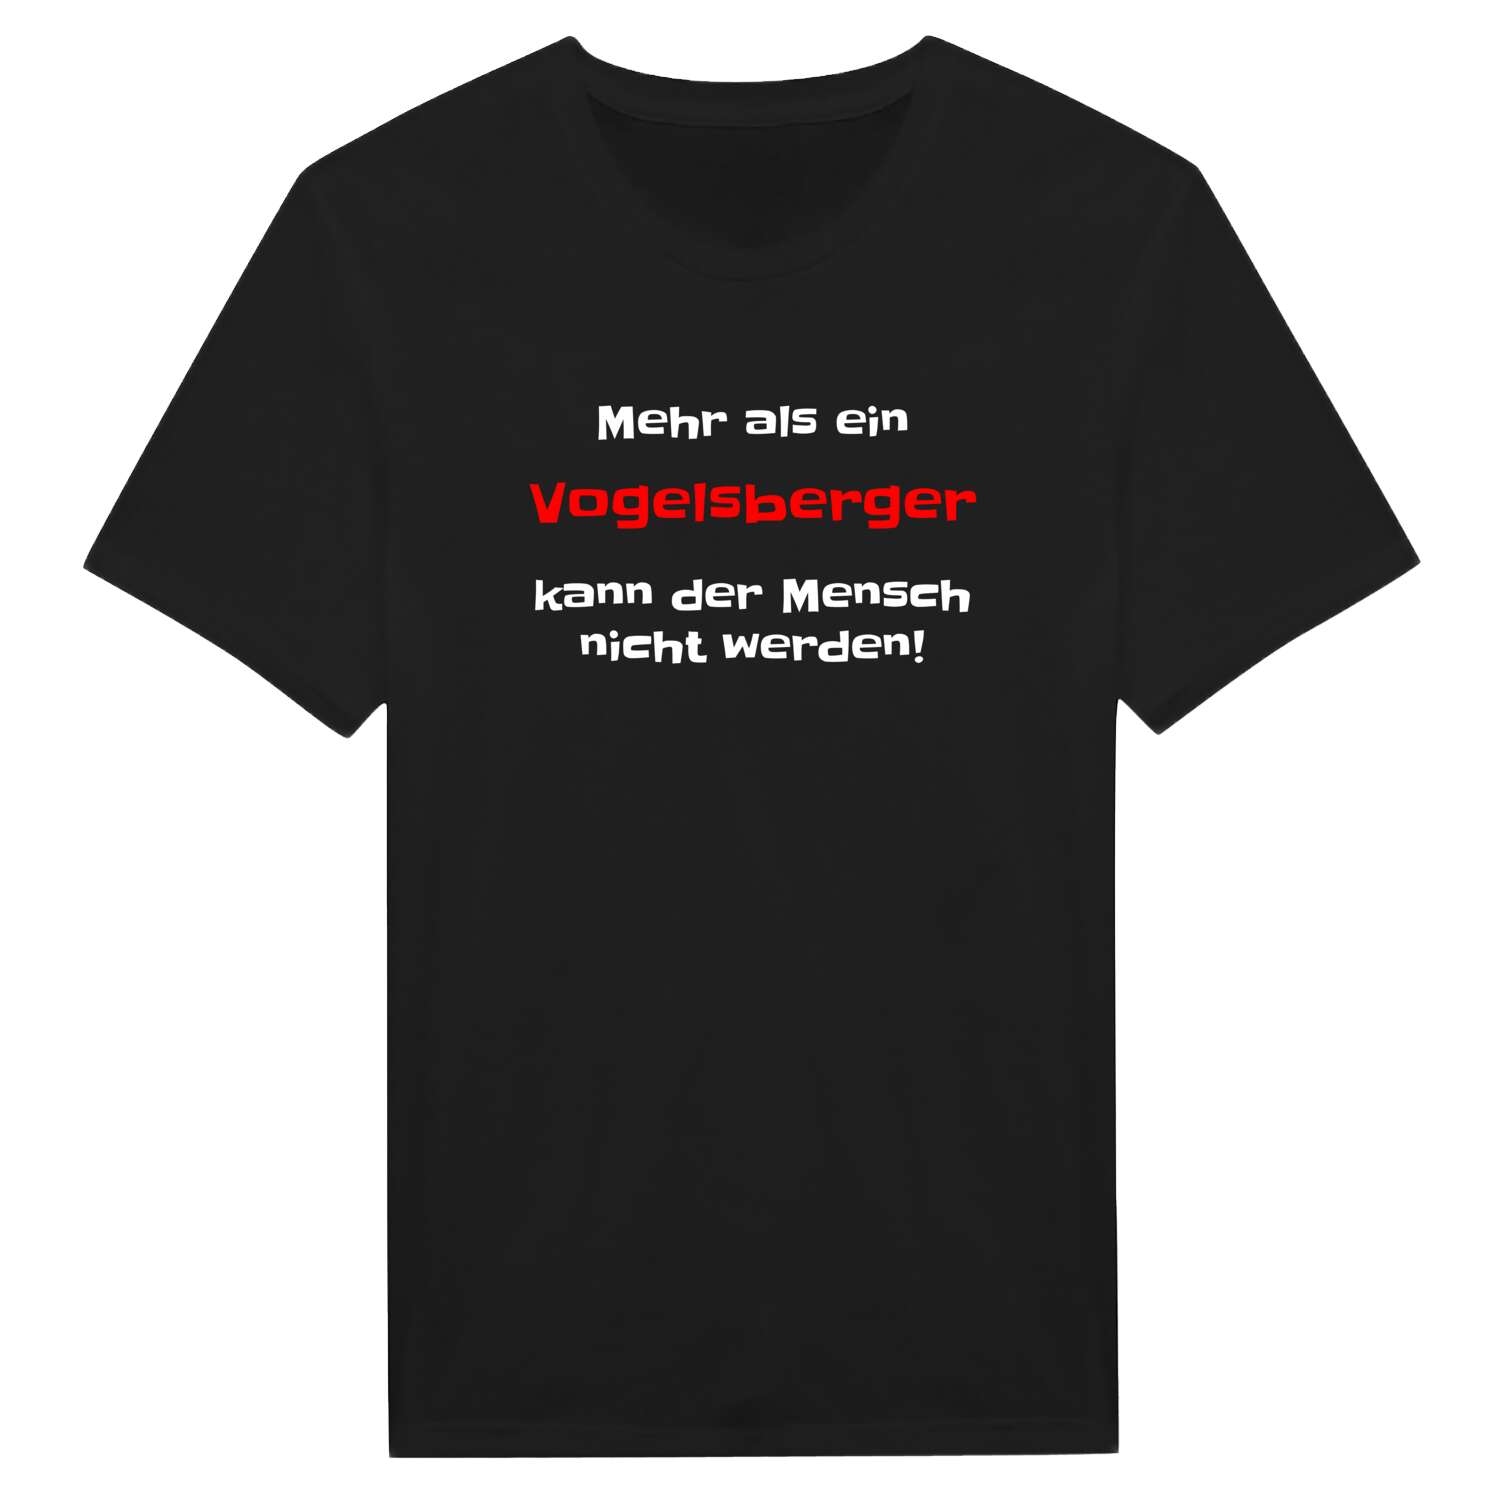 Vogelsberg T-Shirt »Mehr als ein«